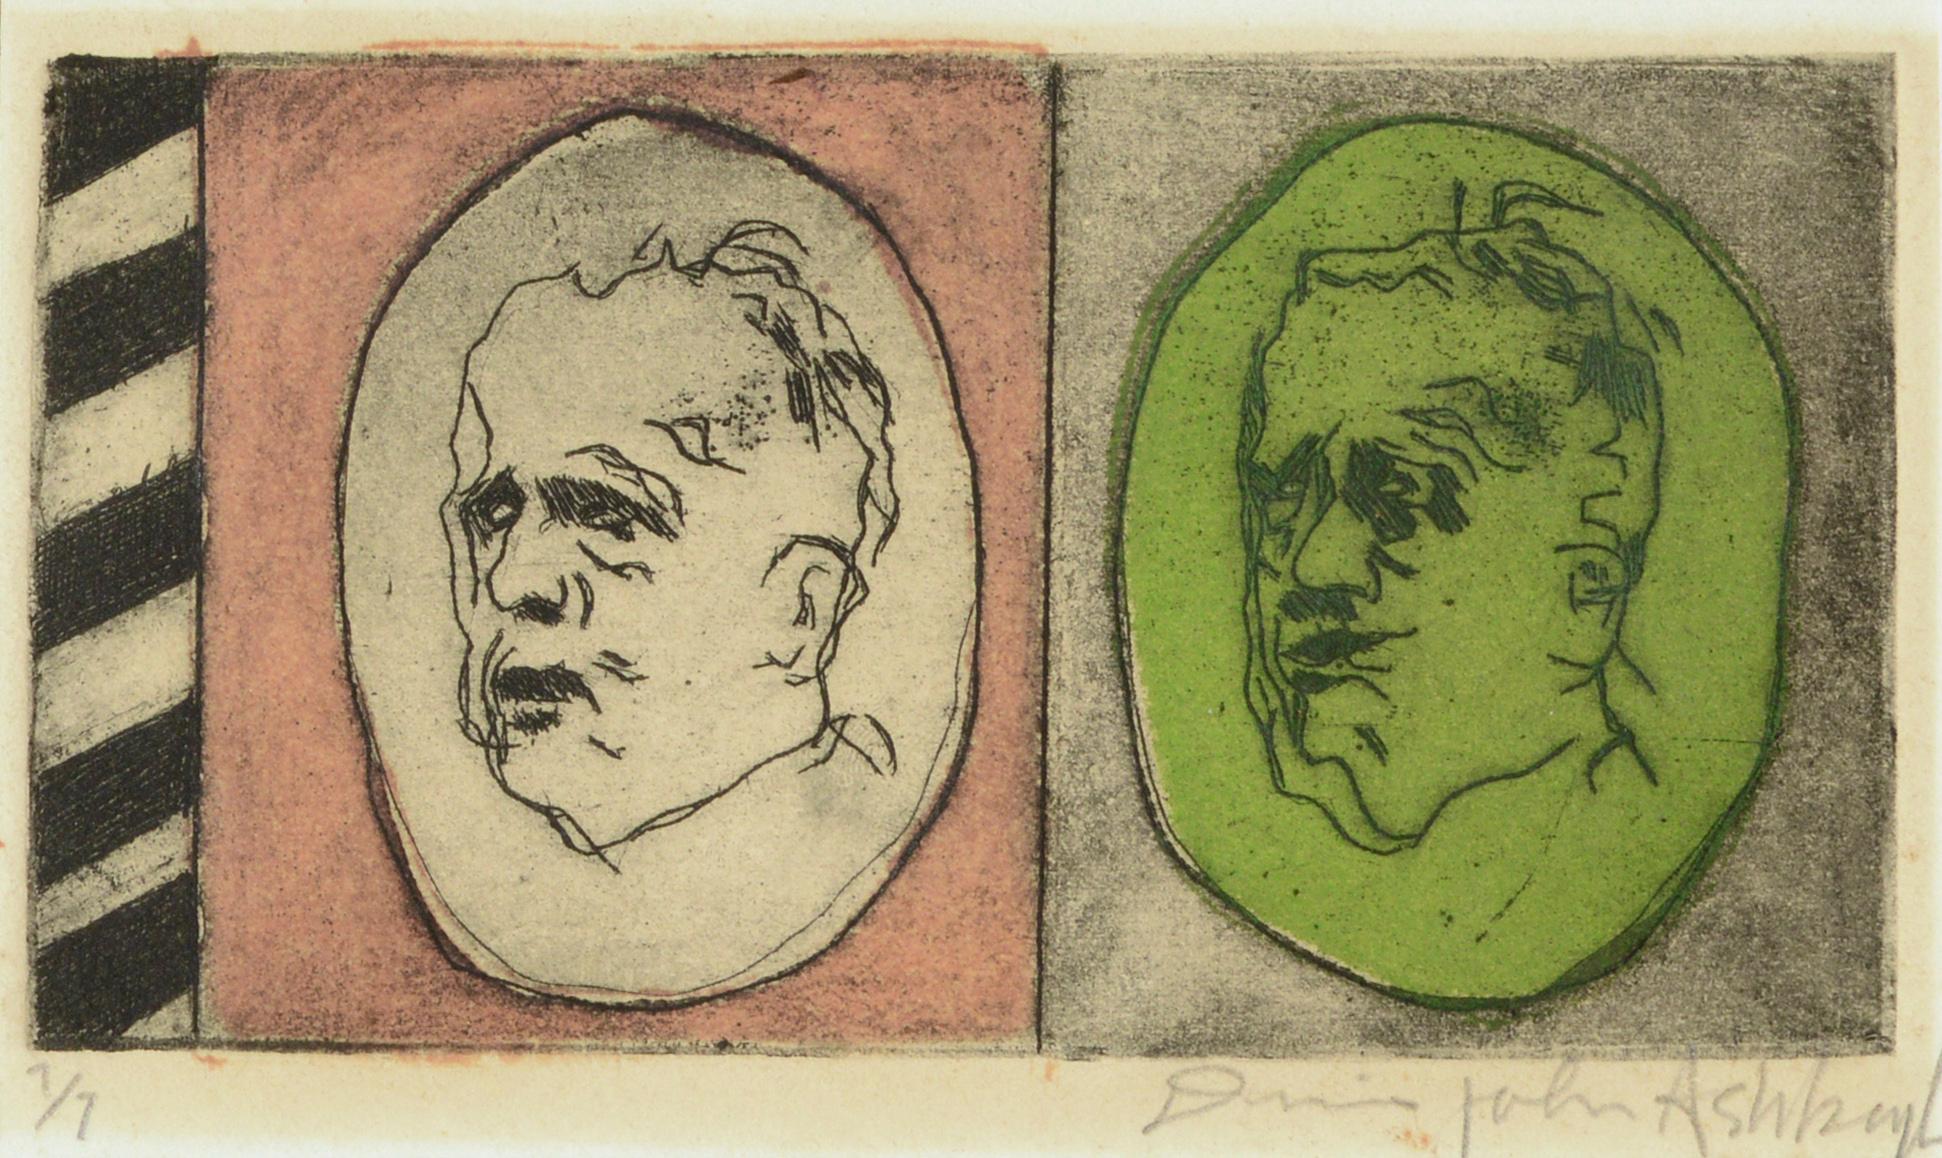 Zwei Gesichter, Modernes Self-Portrait Lithographie des alternden Künstlers in Pink & Grün – Print von Dennis John Ashbaugh